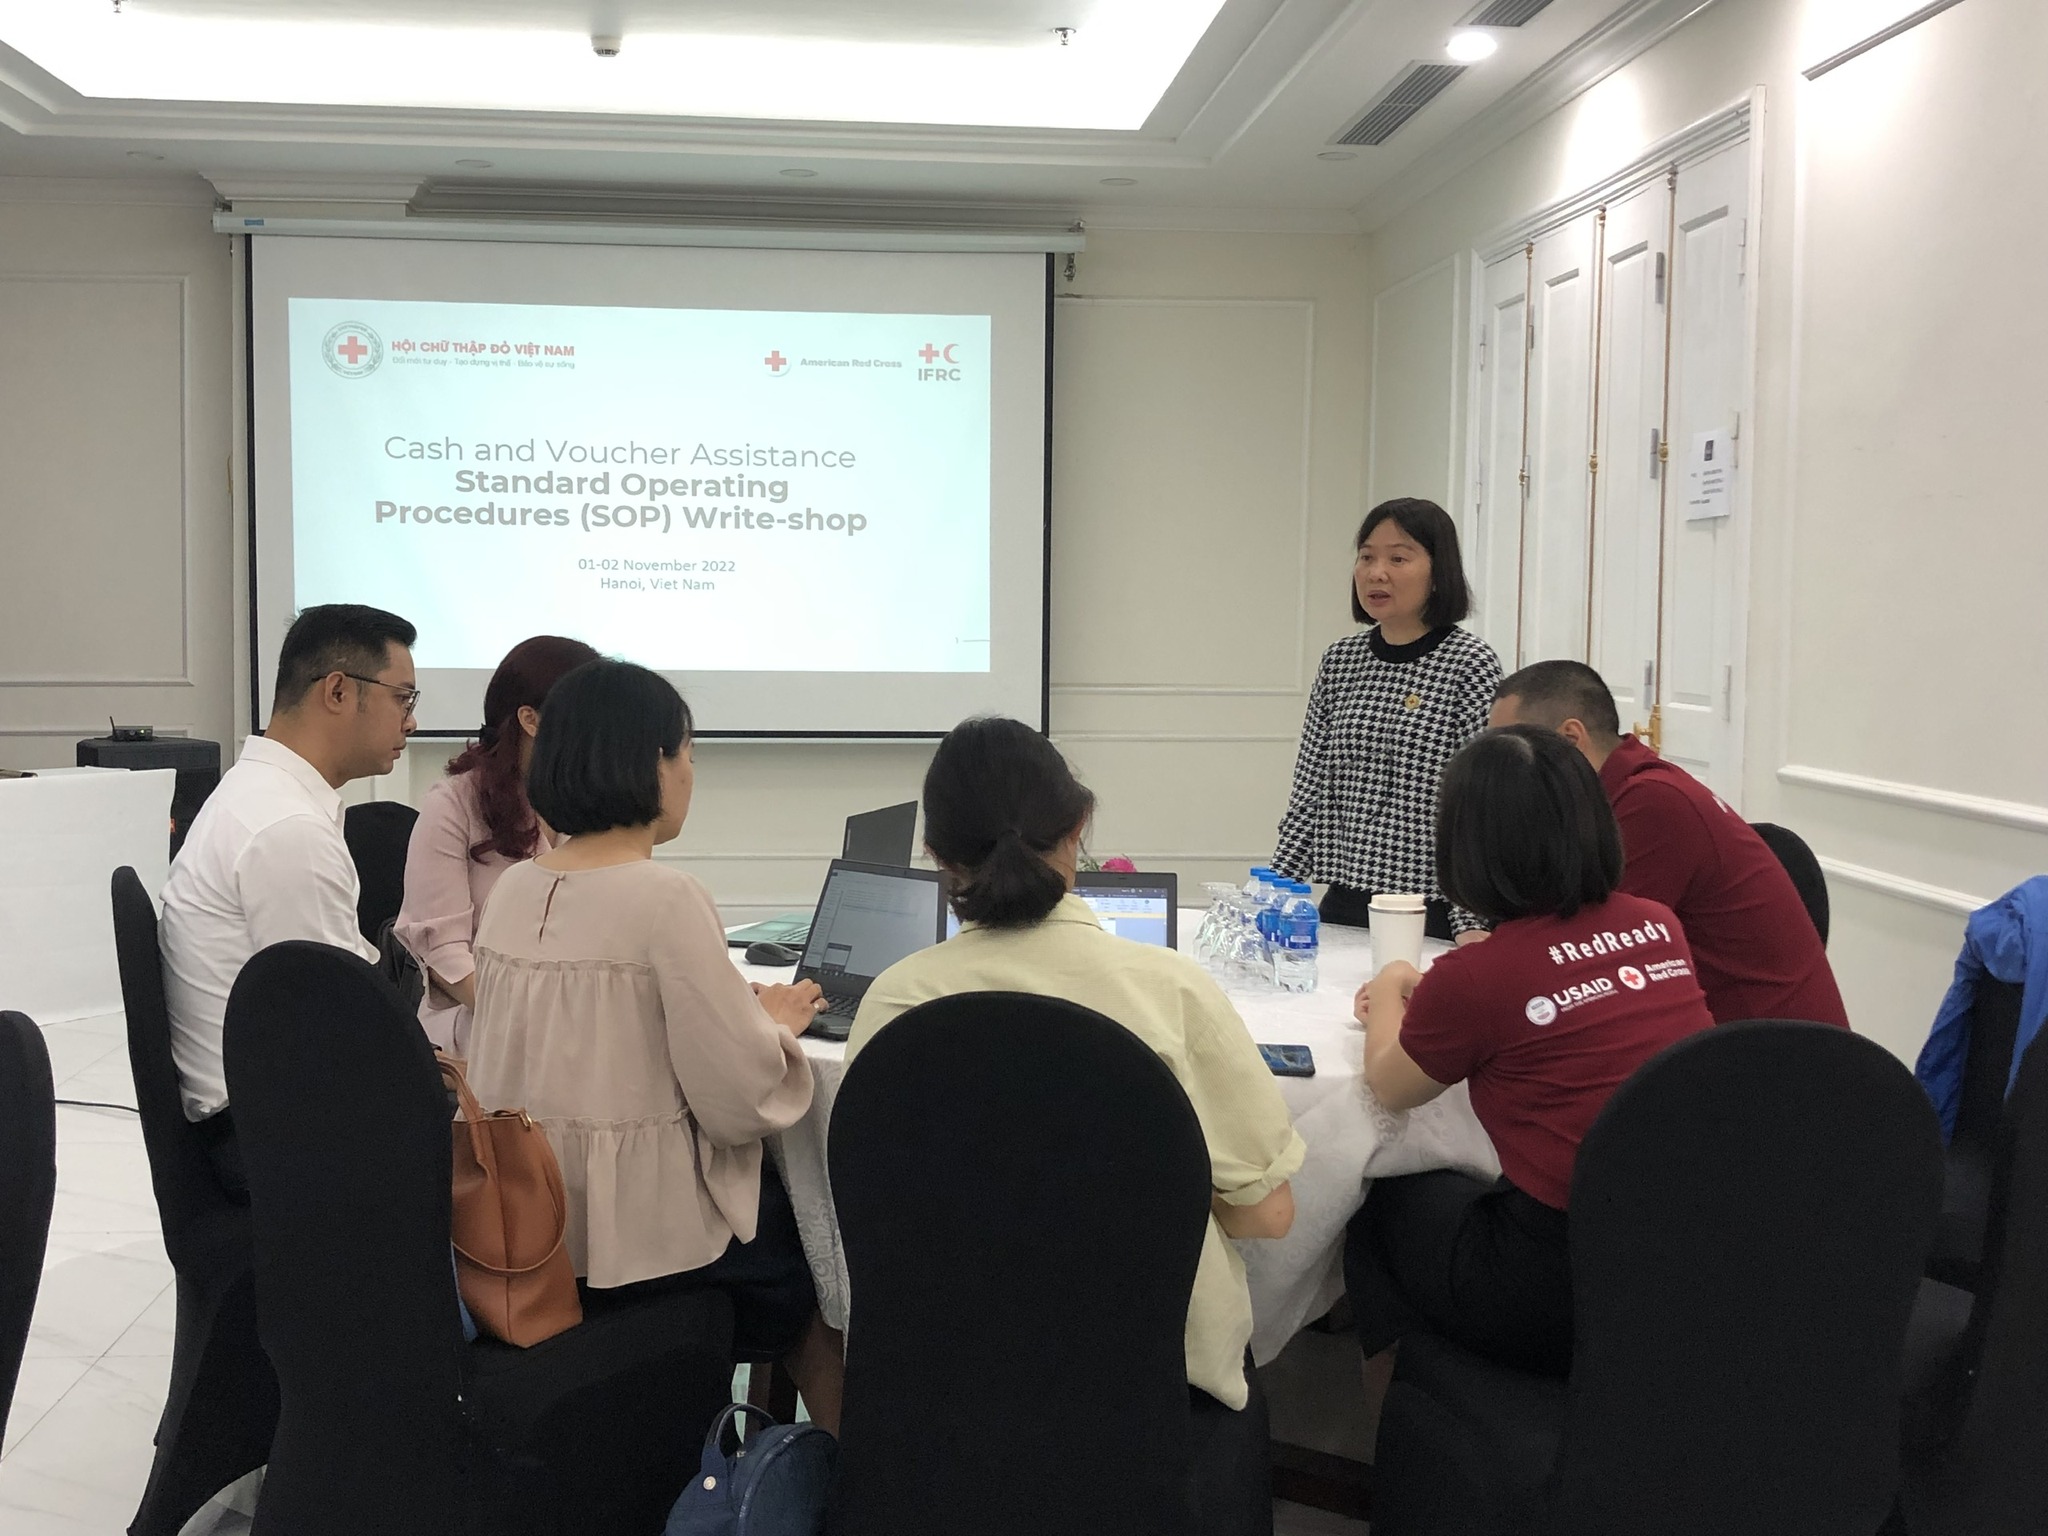 Xây dựng quy trình chuẩn cho hỗ trợ có sử dụng tiền và phiếu của Hội Chữ thập đỏ Việt Nam